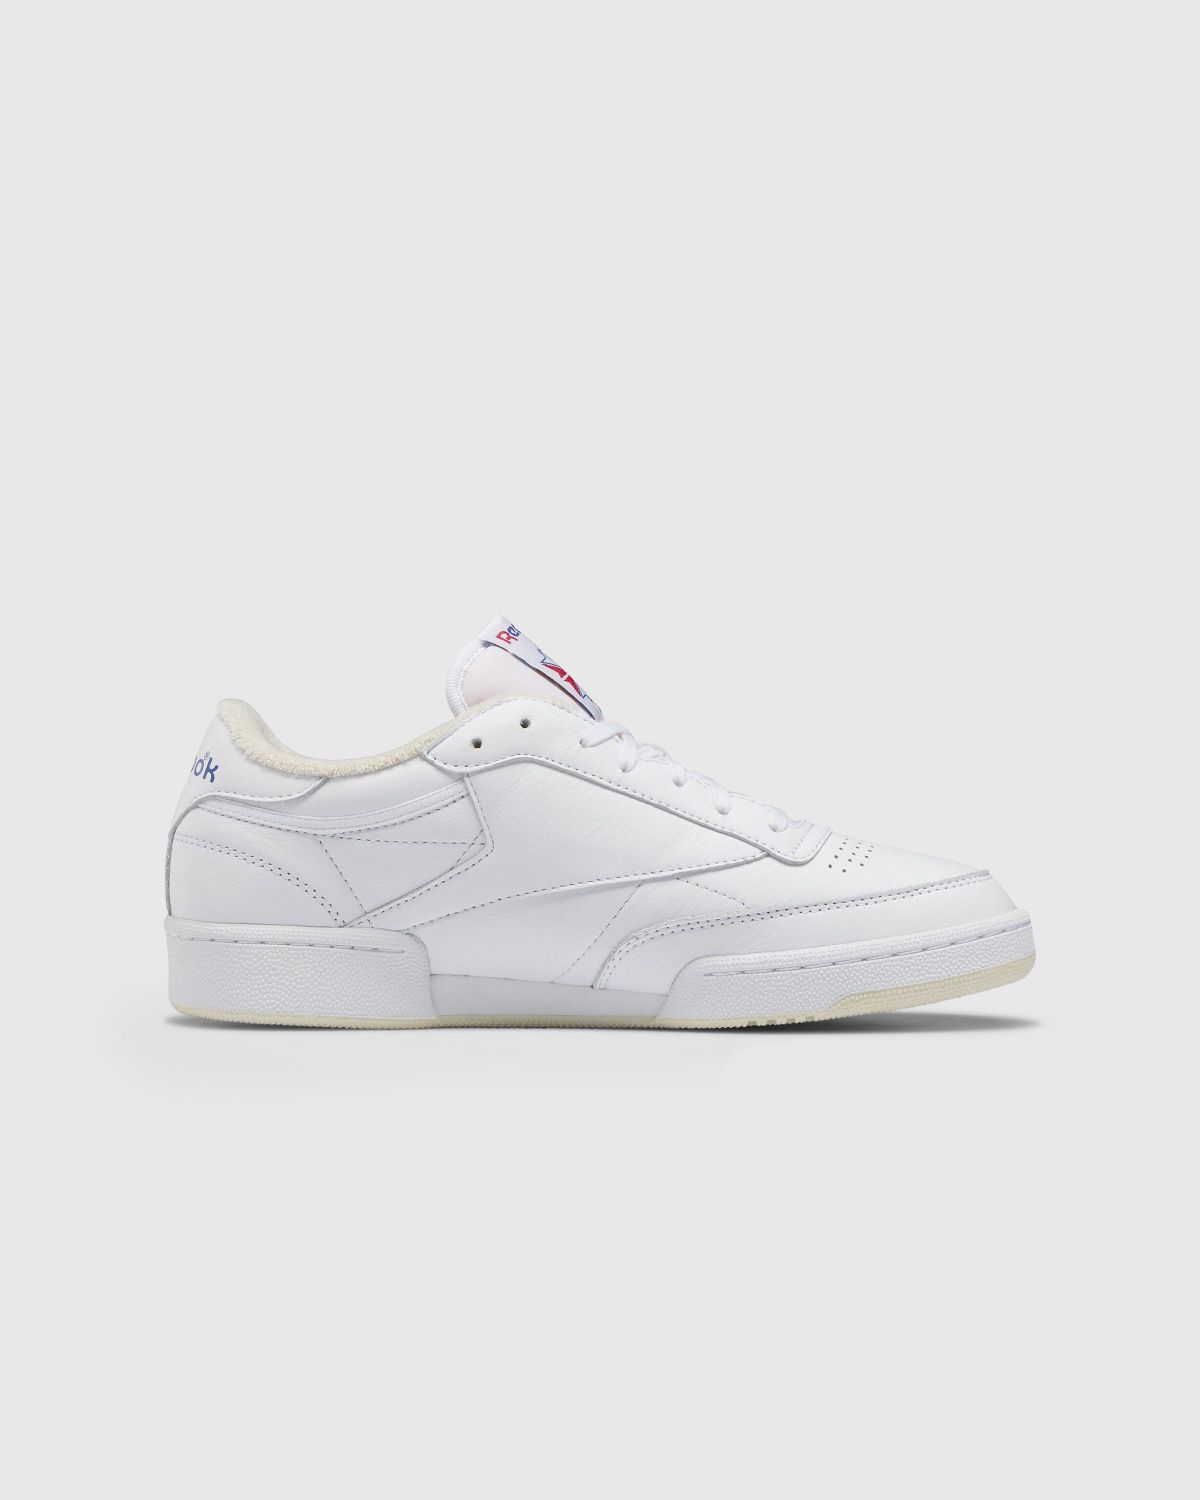 Reebok – Club C 85 Vintage White - Sneakers - White - Image 2